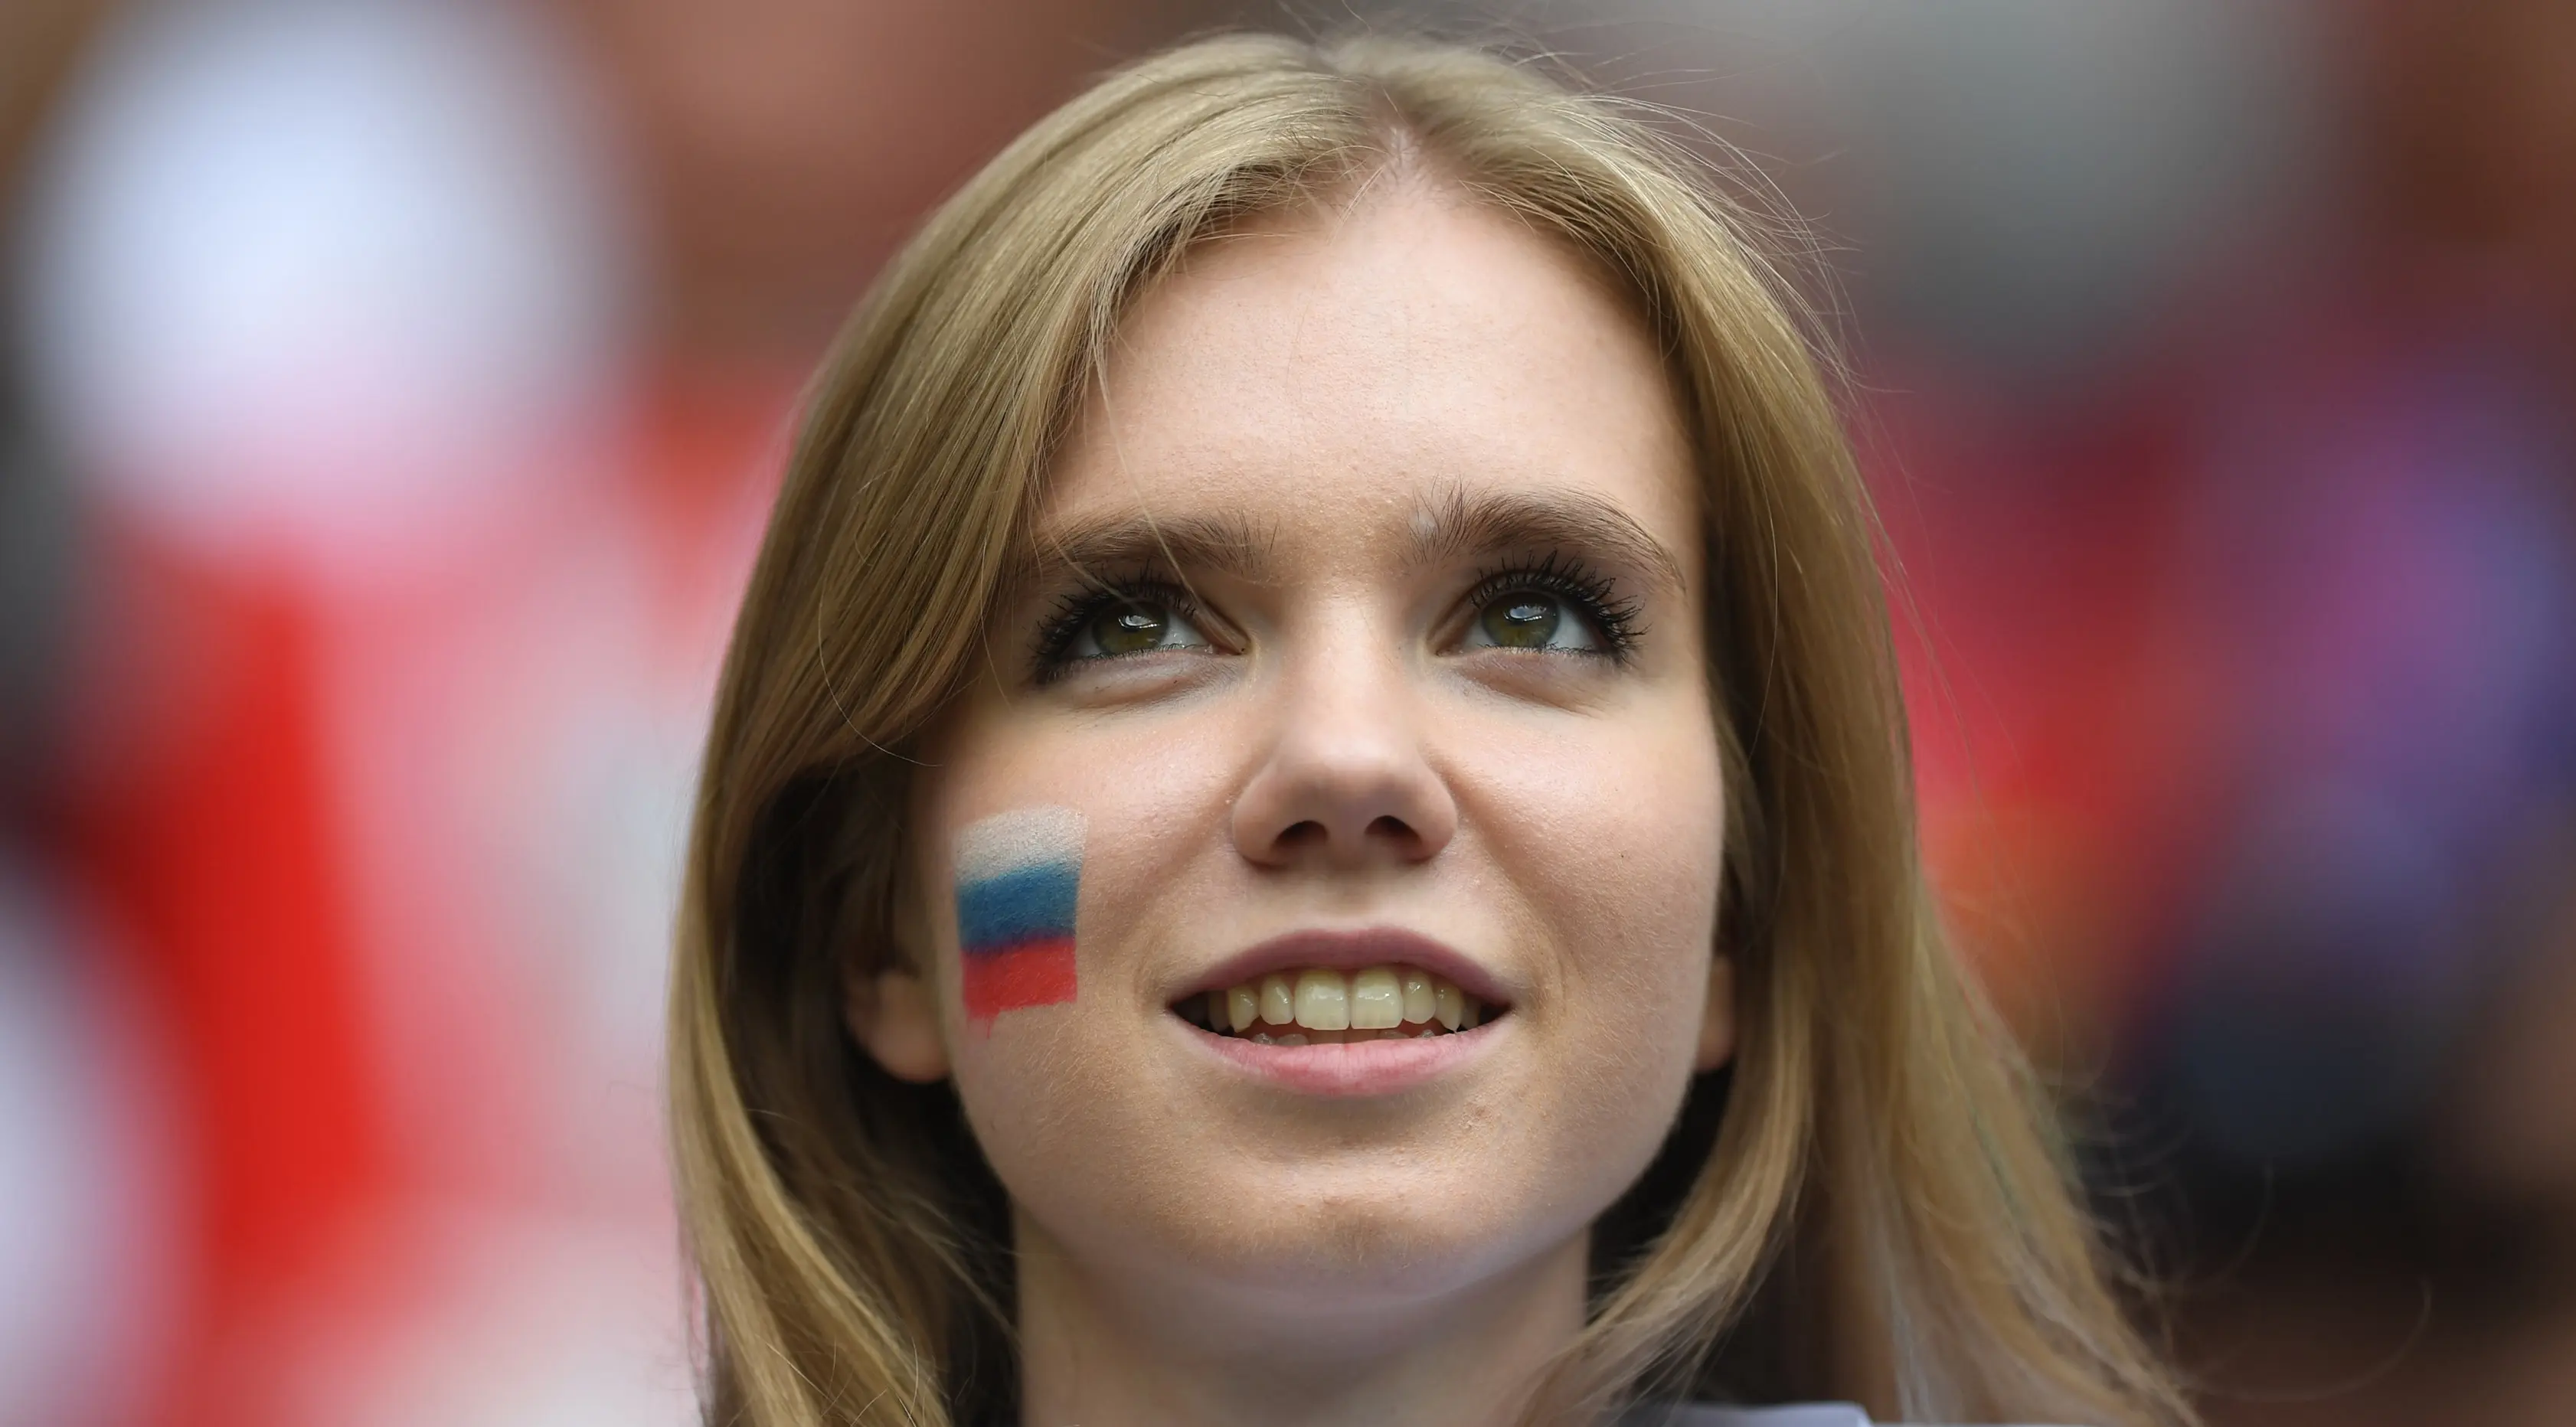 Suporter wanita tersenyum sebelum pertandingan grup A Piala Dunia 2018 antara Rusia dan Arab Saudi di stadion Luzhniki di Moskow, (14/6). Dalam pertandingan ini, Rusia menang 5-0 atas Arab Saudi. (AFP Photo / Francisco Leong)